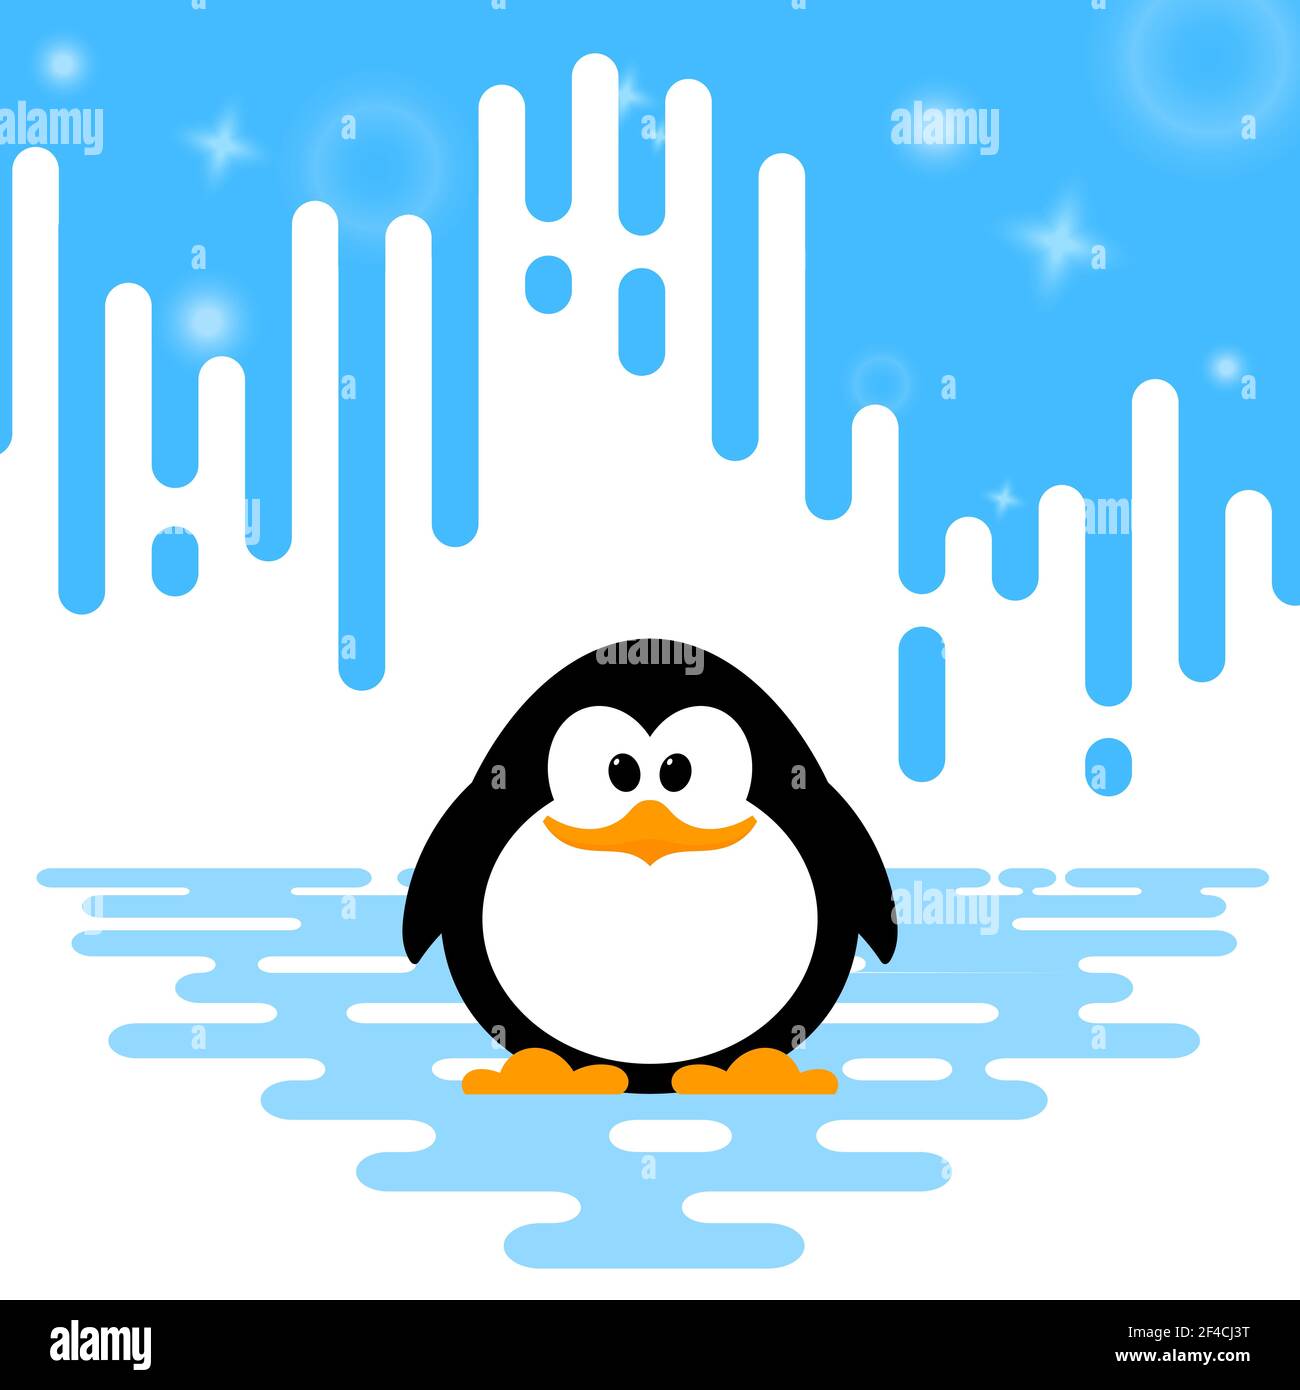 Illustrazione vettoriale di un simpatico pinguino su sfondo astratto invernale a strisce. Illustrazione Vettoriale